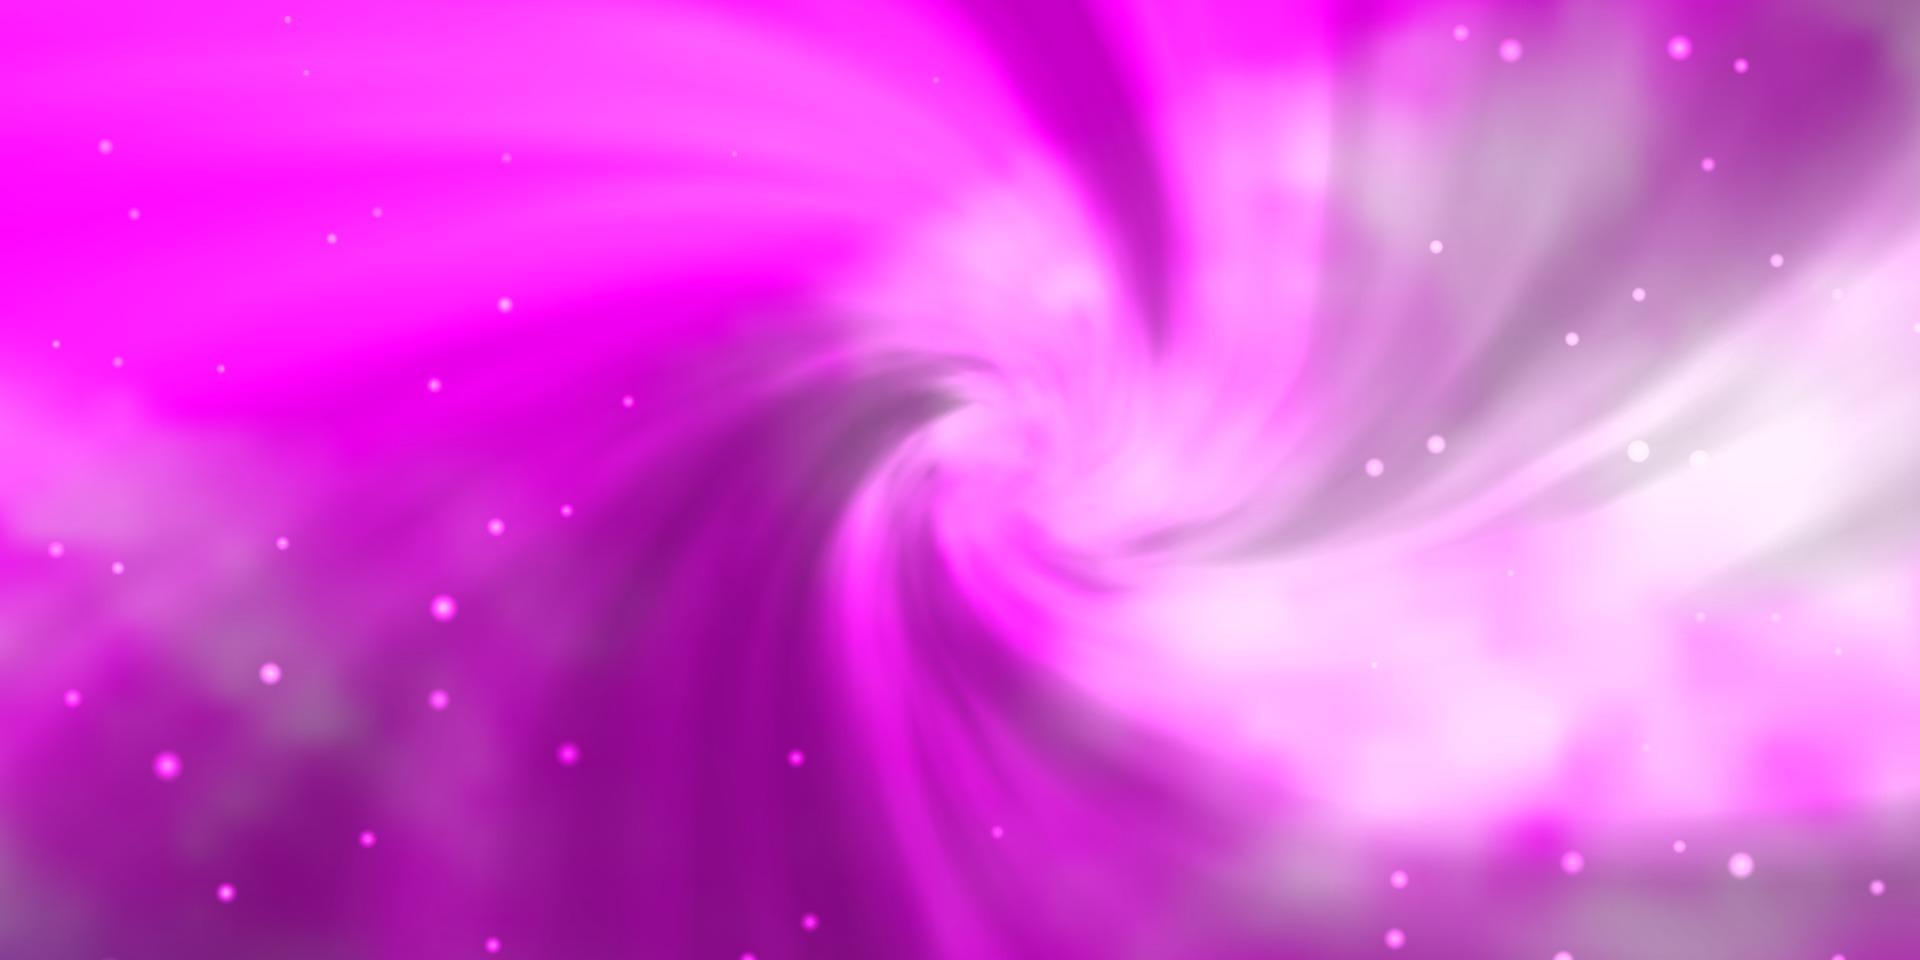 ljuslila, rosa vektormall med neonstjärnor. vektor